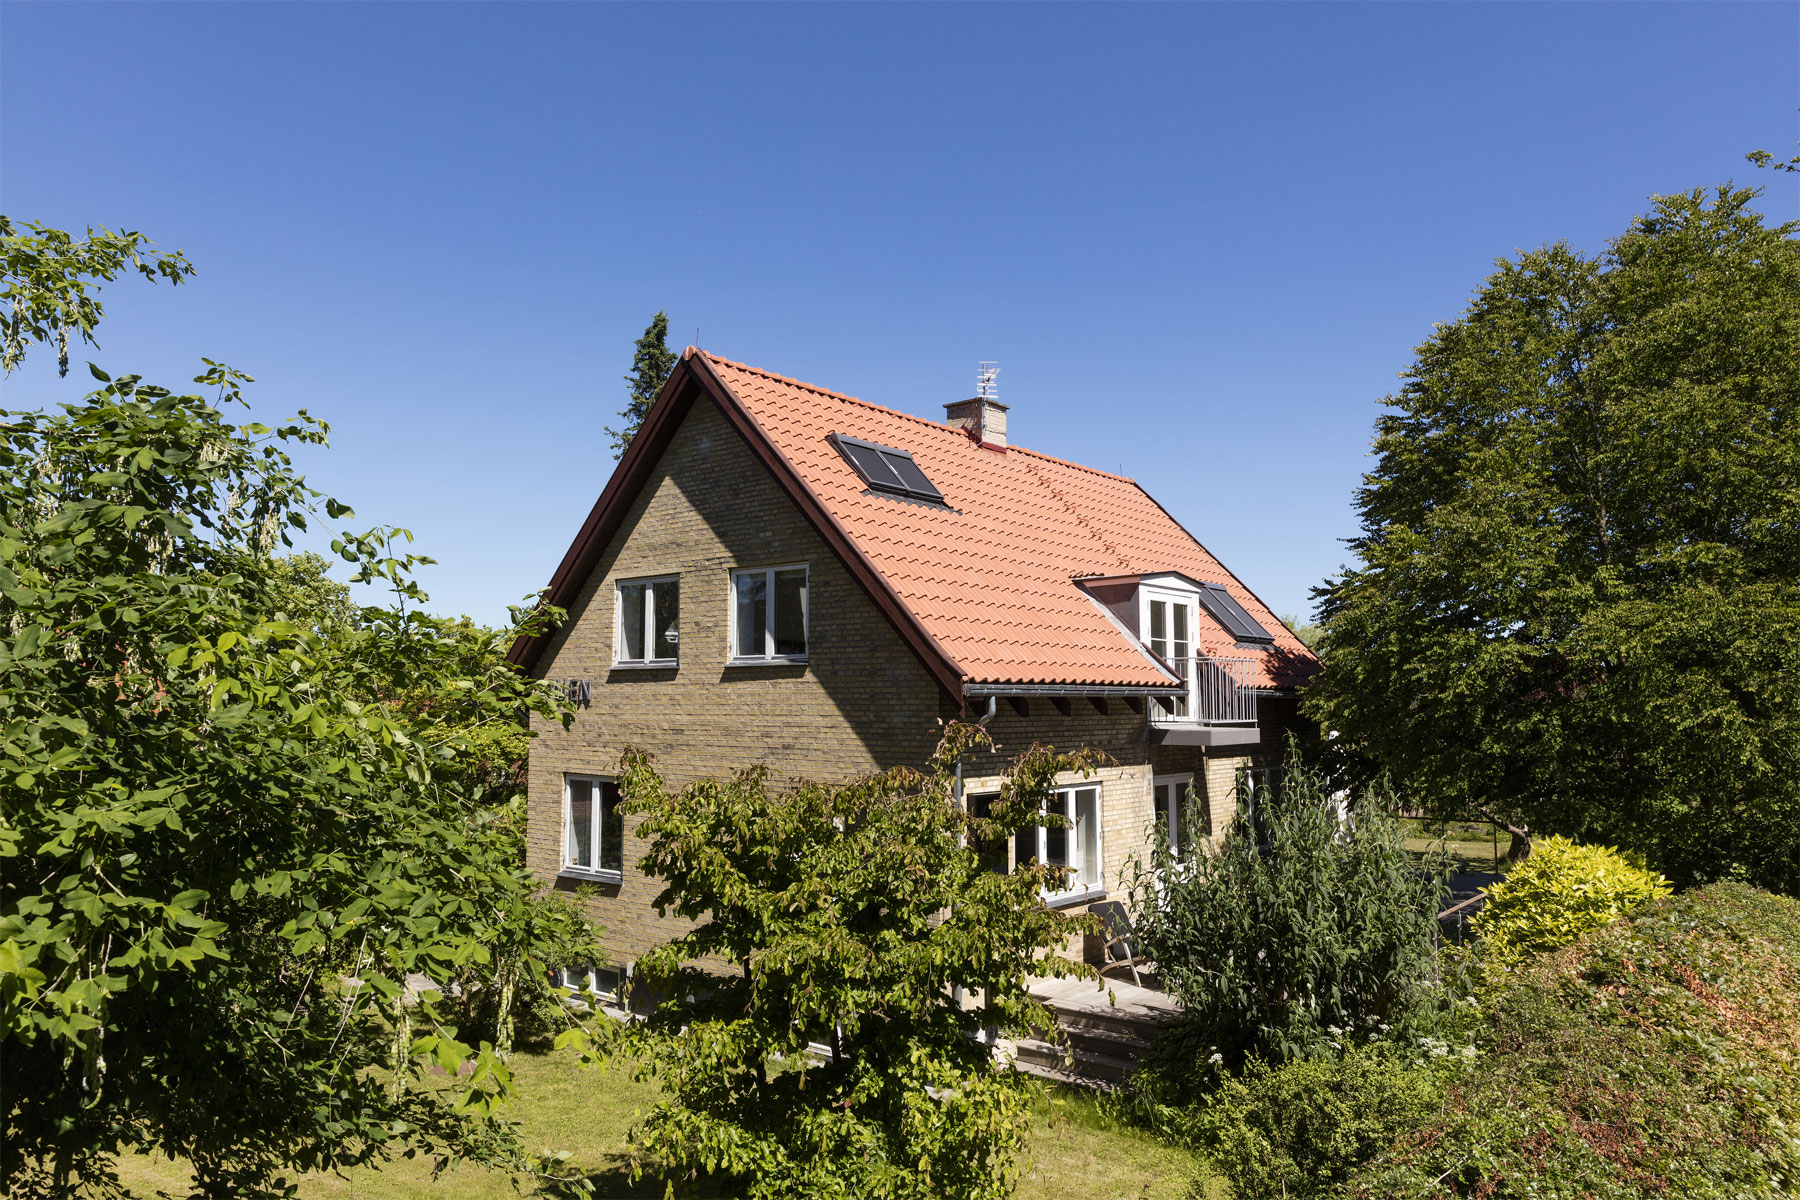 Dom neďaleko Kodane priniesol obyvateľom želaný výsledok až po druhej rekonštrukcii.